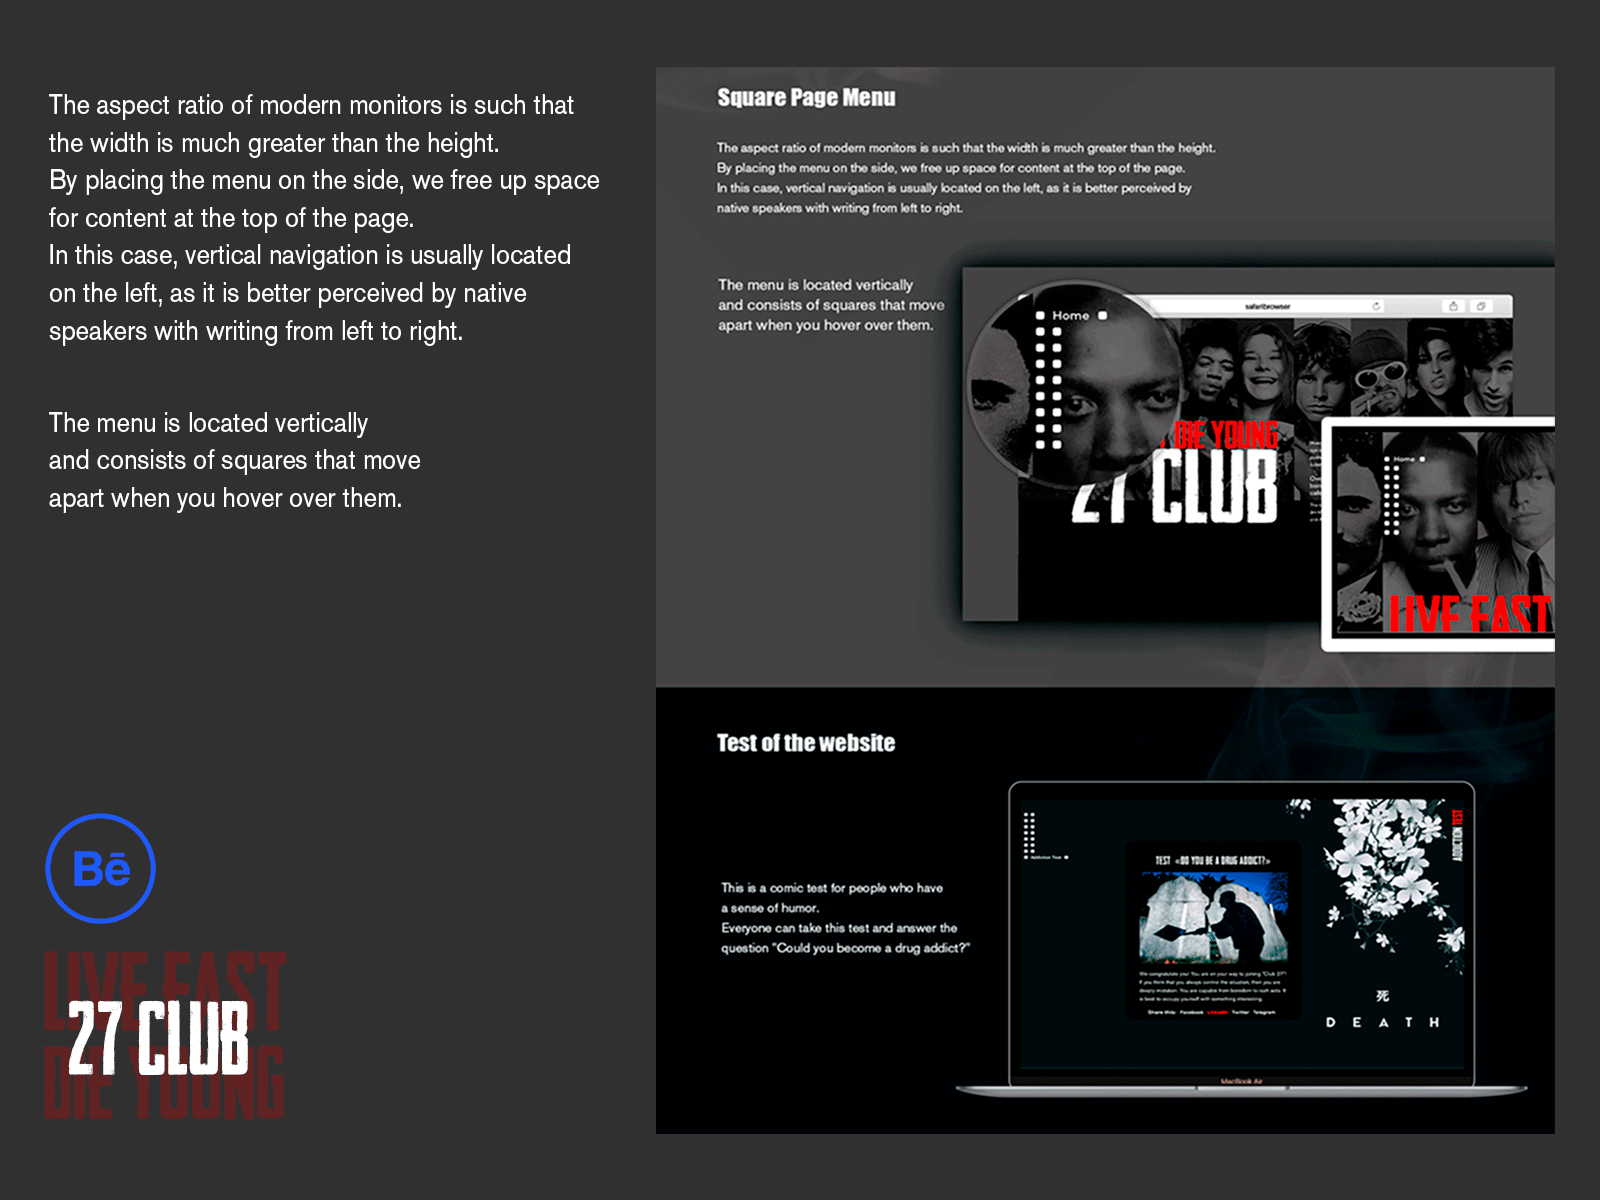 24 CLUB (square page menu) behance illustration menu design website website design